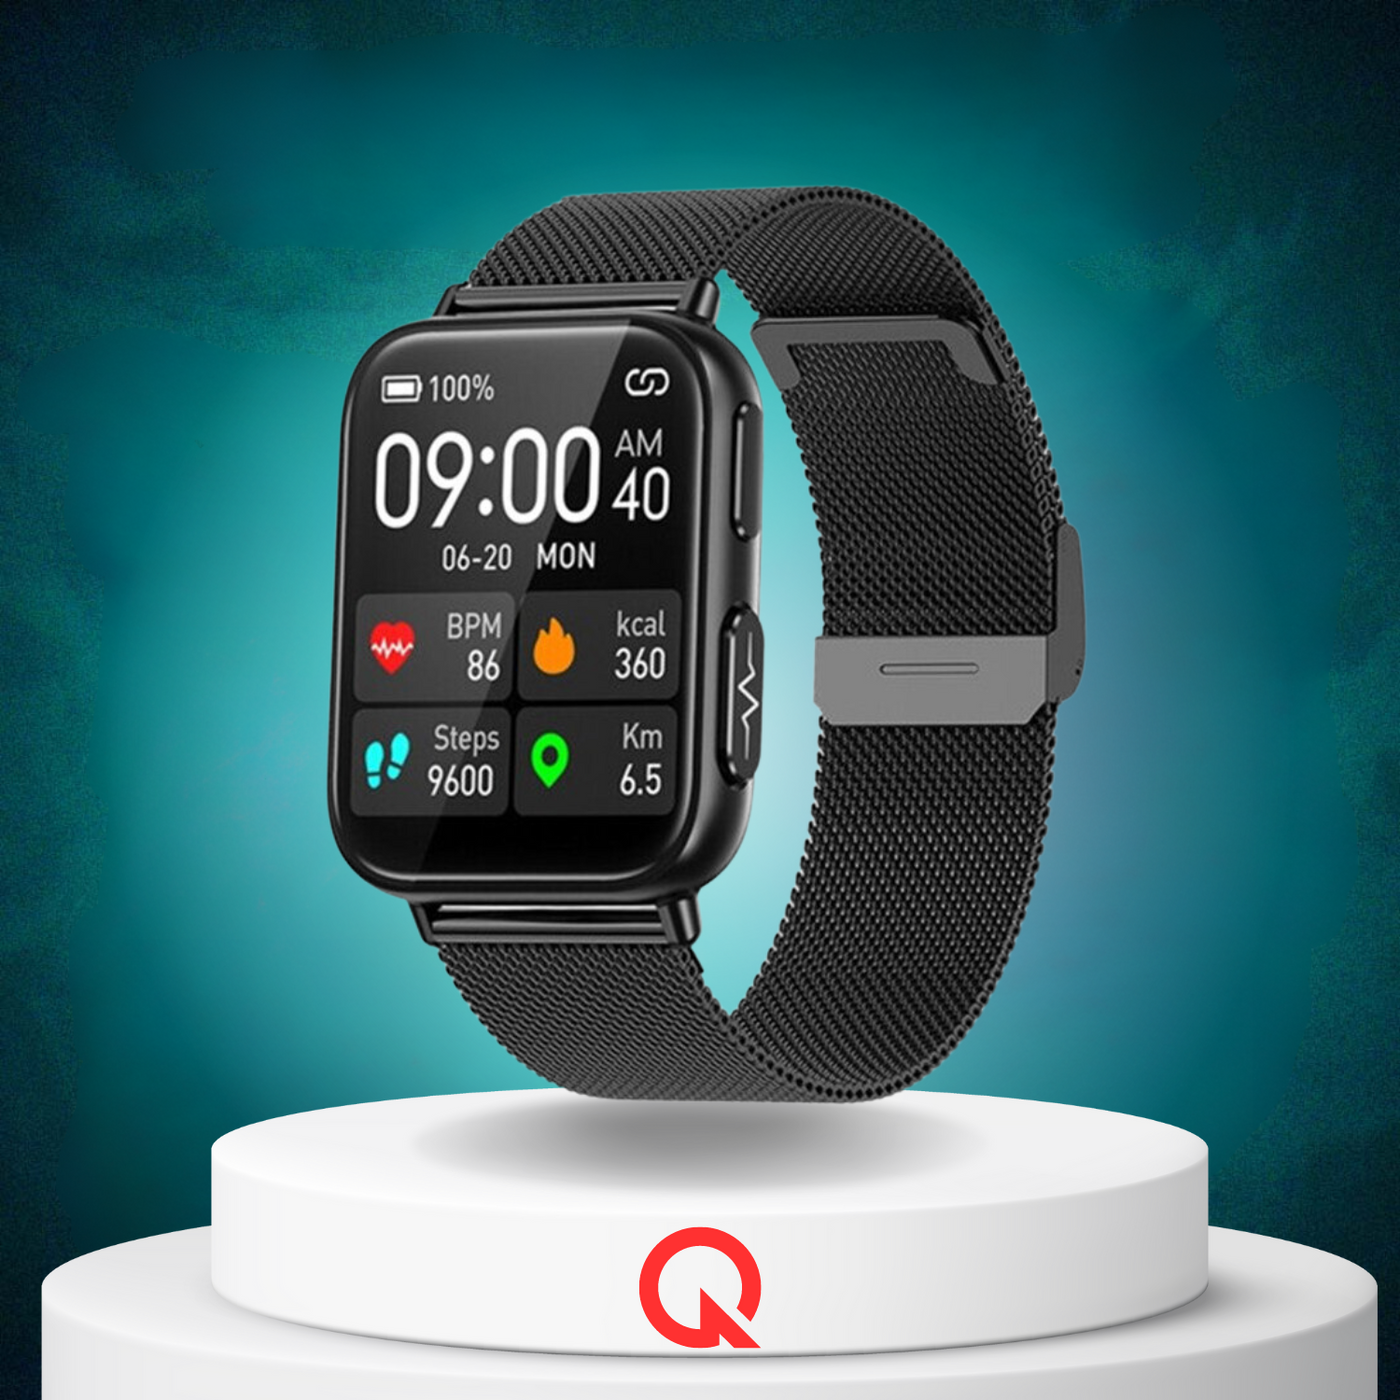 QUANTYVO™ CARE Plus 2 - Non-Invasive Blood Glucose Monitoring Smartwatch